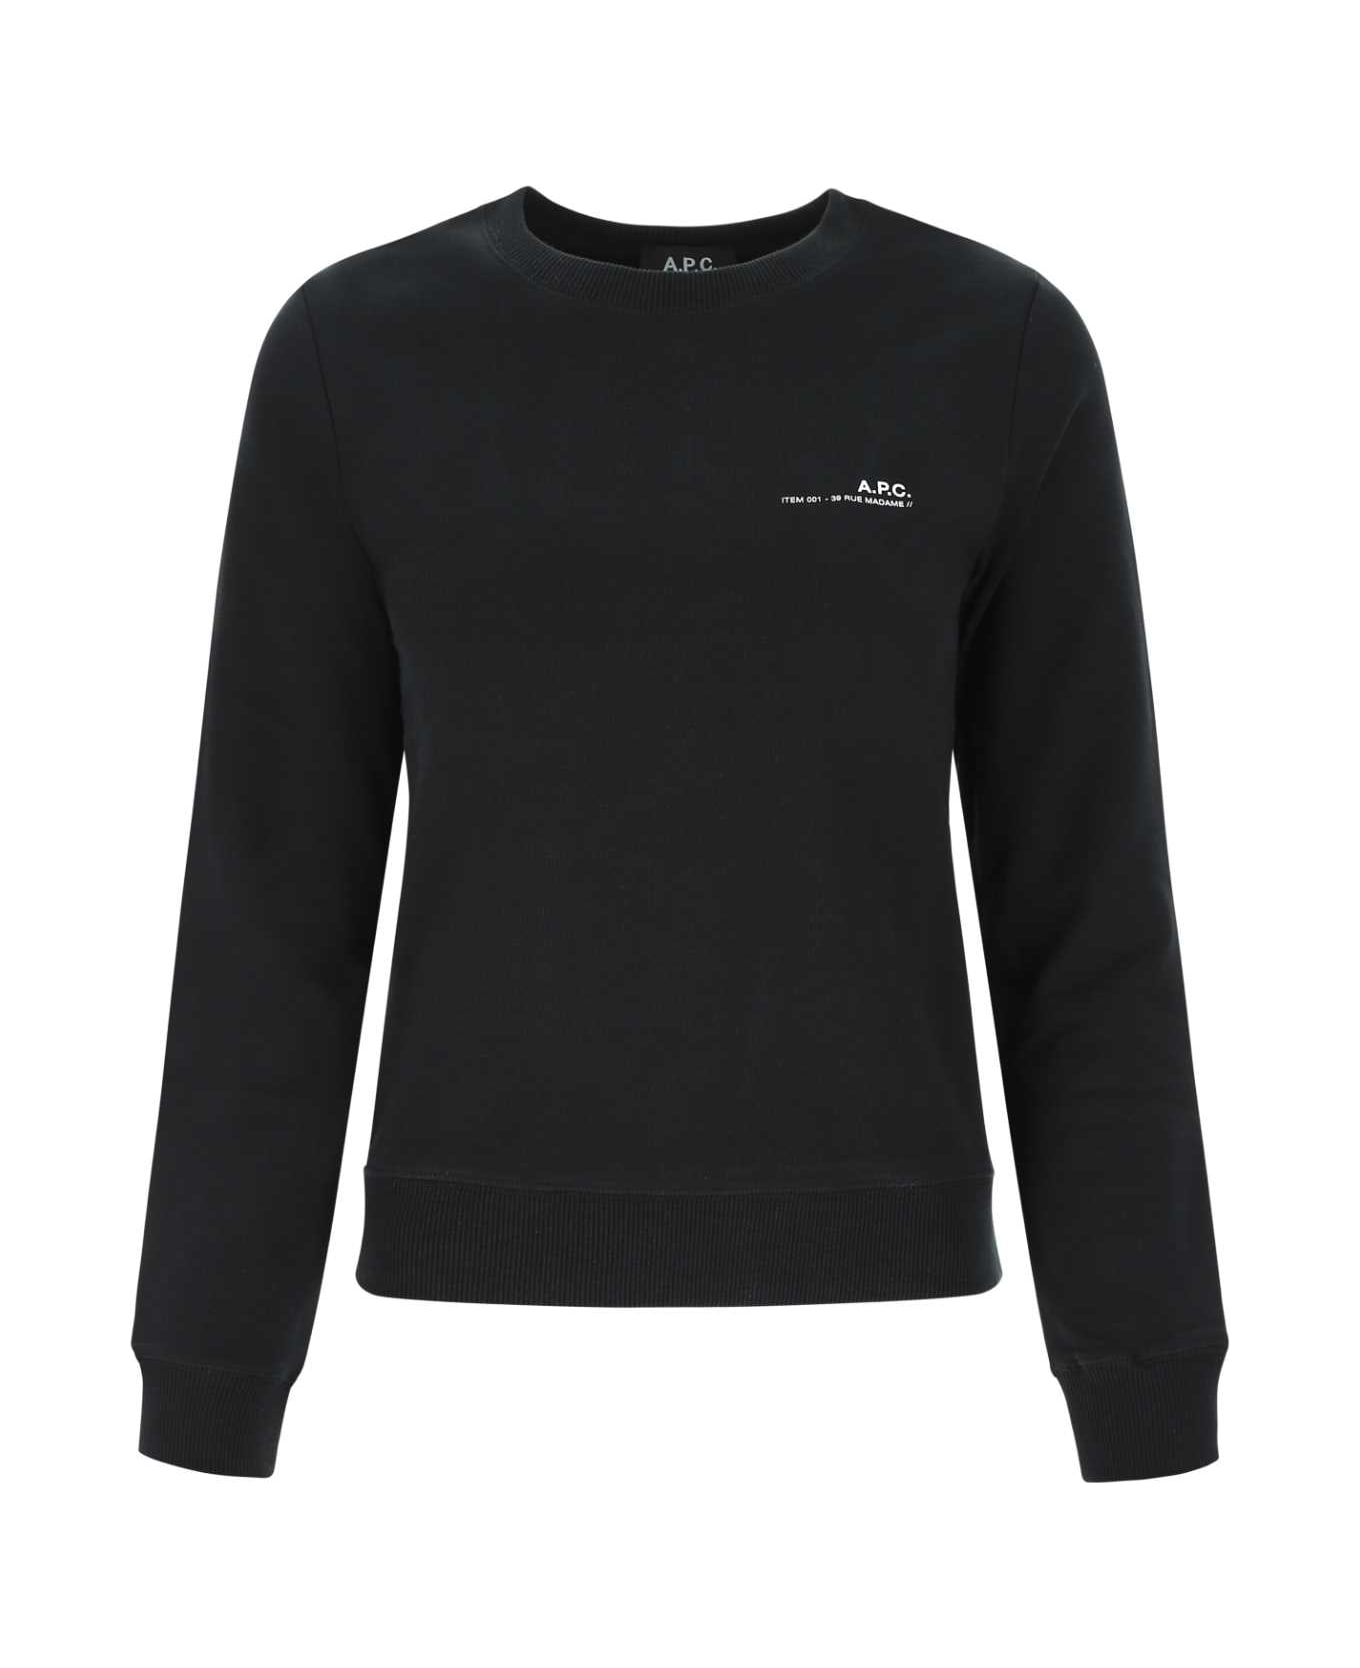 A.P.C. Black Cotton Sweatshirt - LZZ